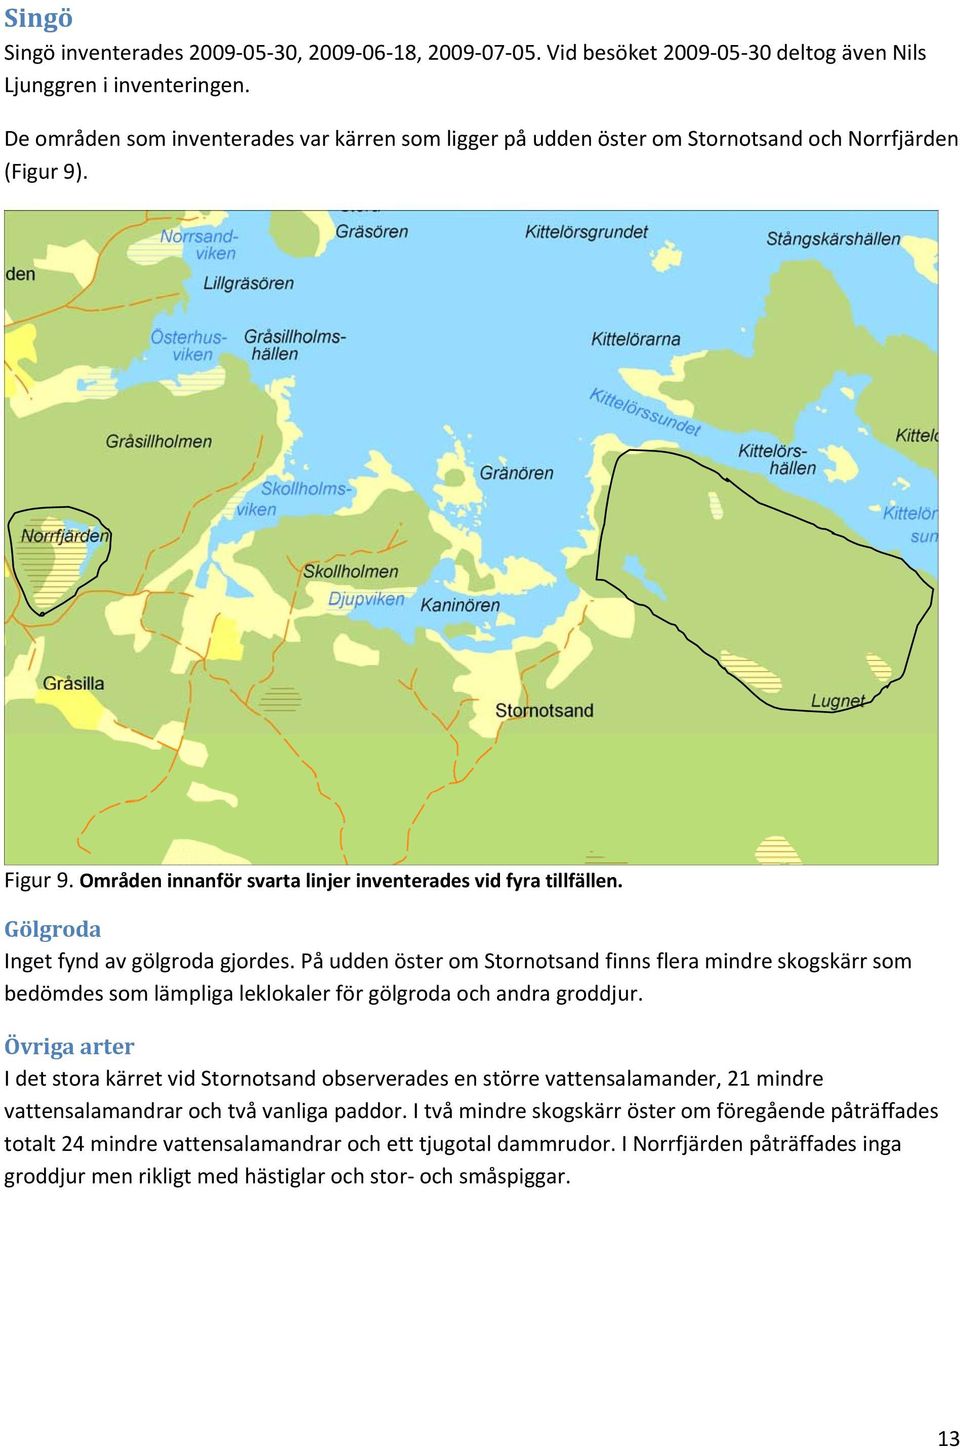 Gölgroda Inget fynd av gölgroda gjordes. På udden öster om Stornotsand finns flera mindre skogskärr som bedömdes som lämpliga leklokaler för gölgroda och andra groddjur.